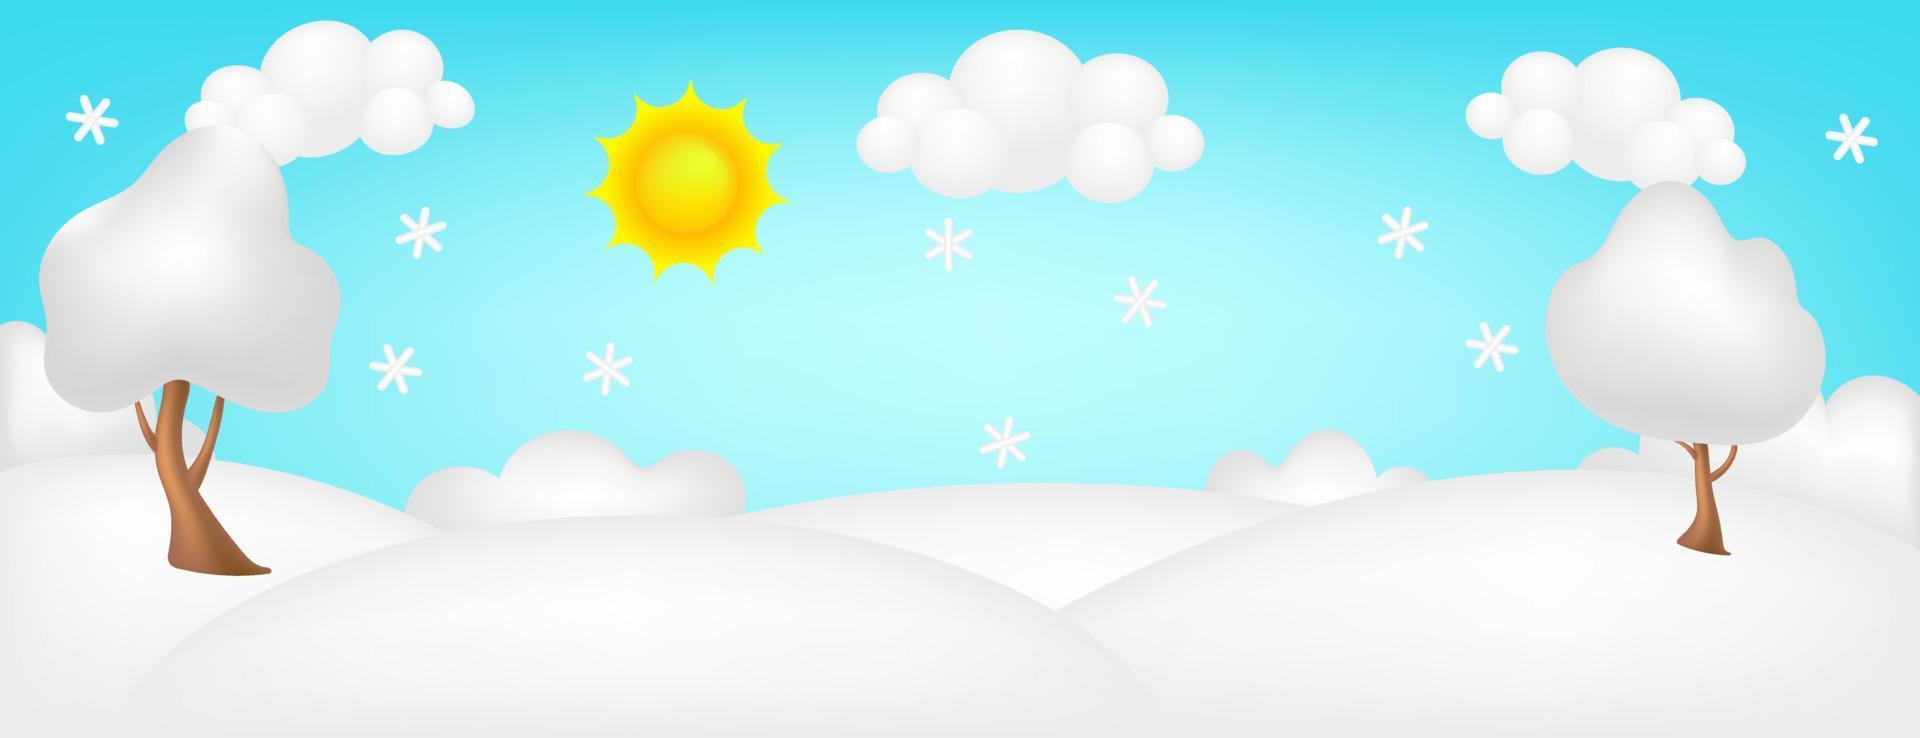 Prado panorama 3d ilustração vetorial. brilhante paisagem de fundo de crianças do vale de inverno. cenário bonito colorido com neve, árvores, flocos de neve, céu azul, sol, nuvens para crianças. Feliz Natal. vetor